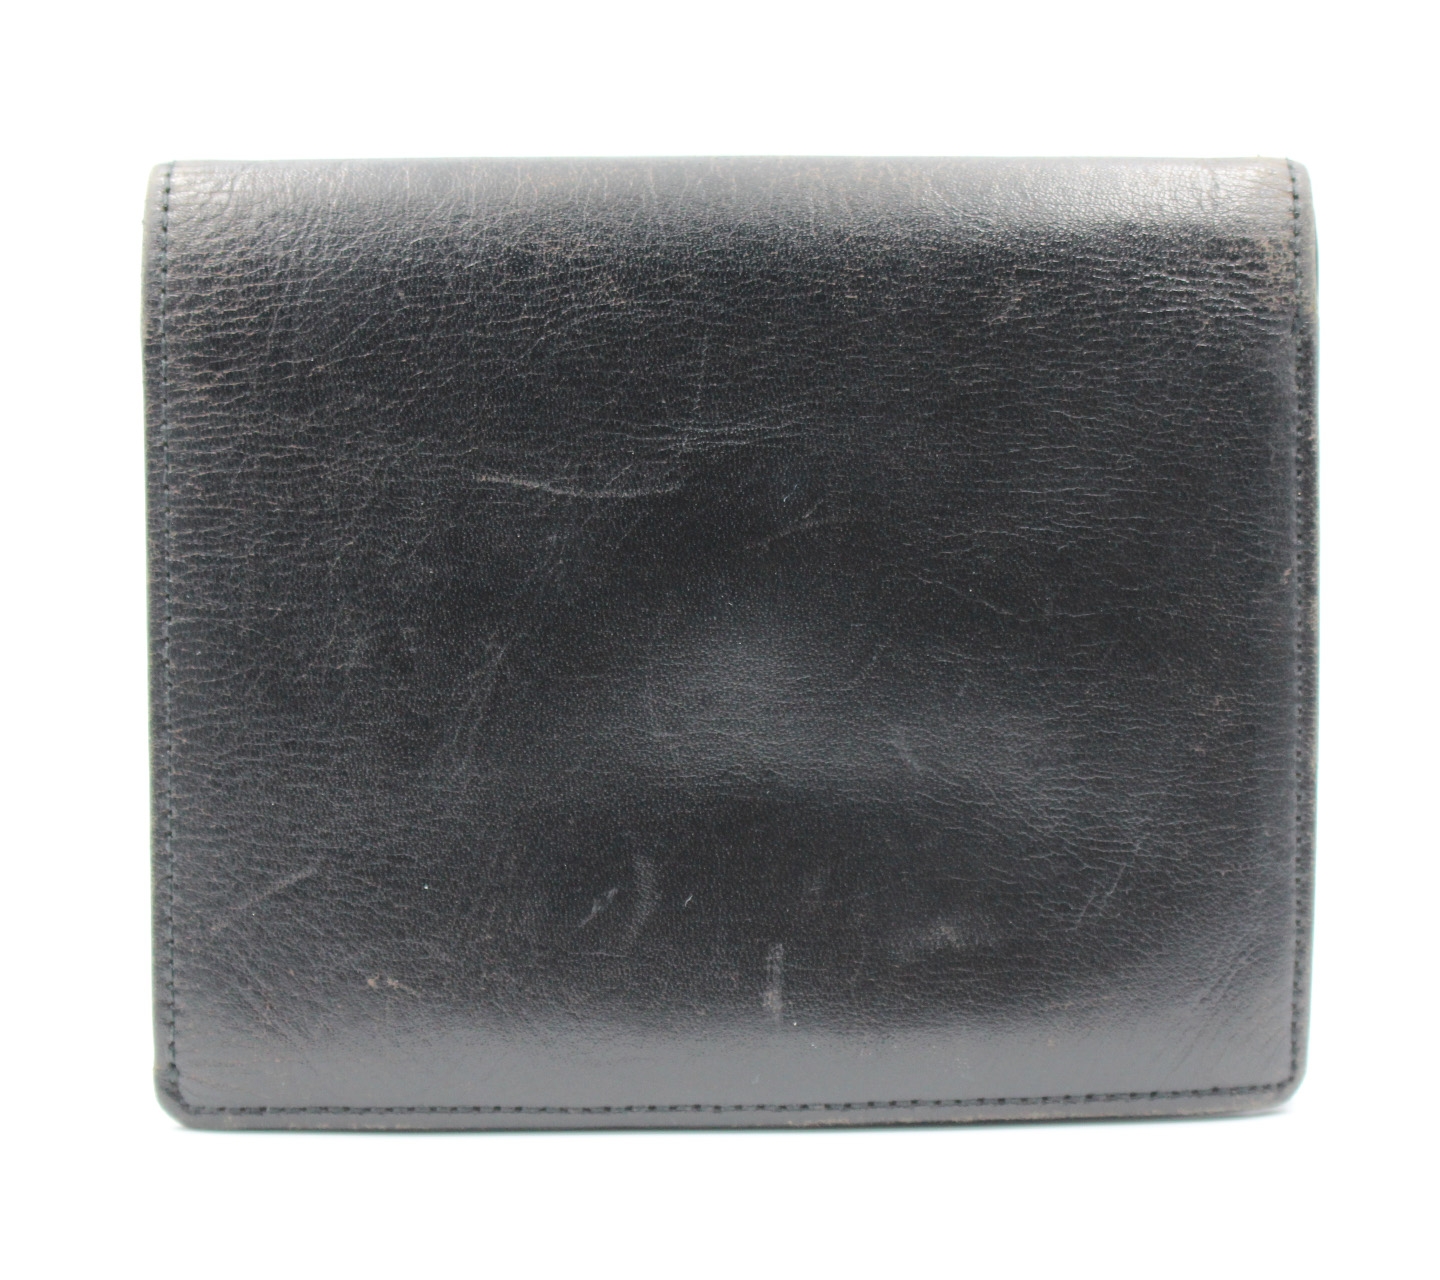 Jean Paul Gaultier Black Leather Wallet